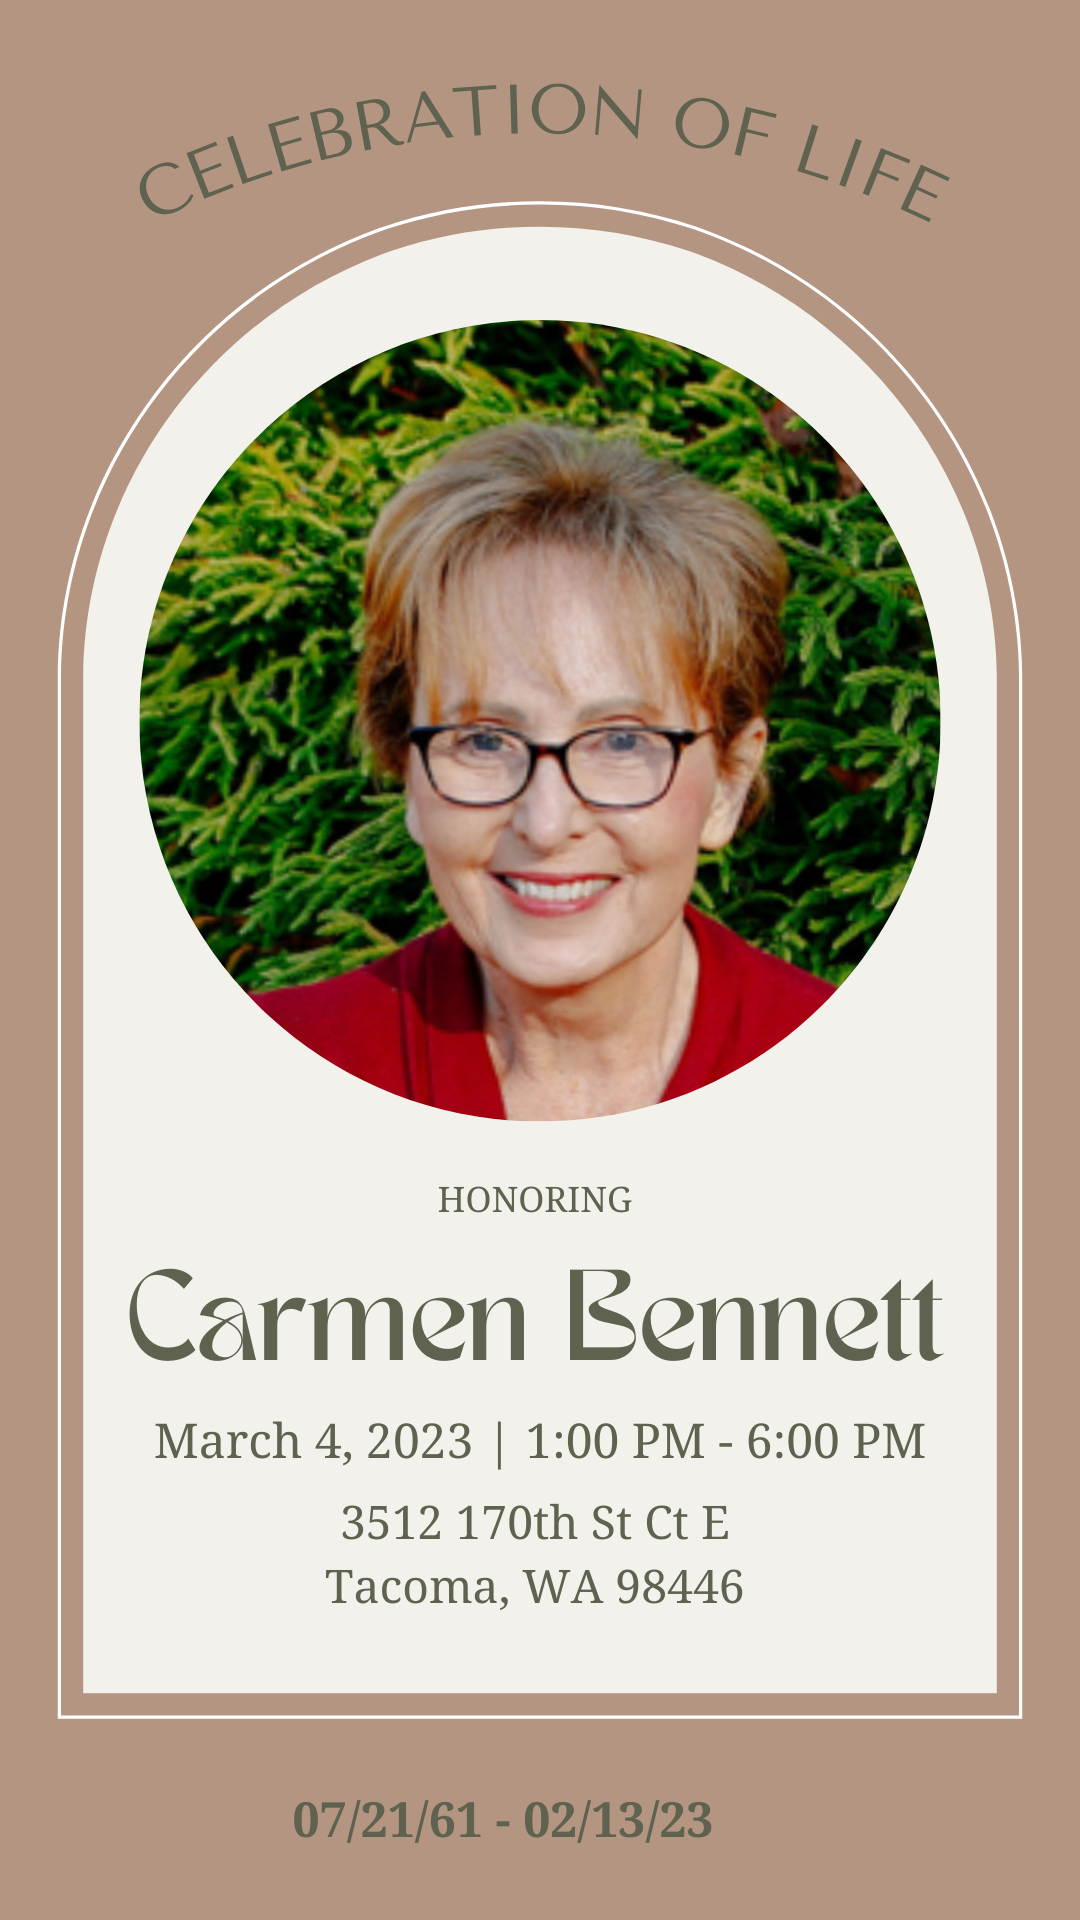 Carmen Bennett Celebration of Life